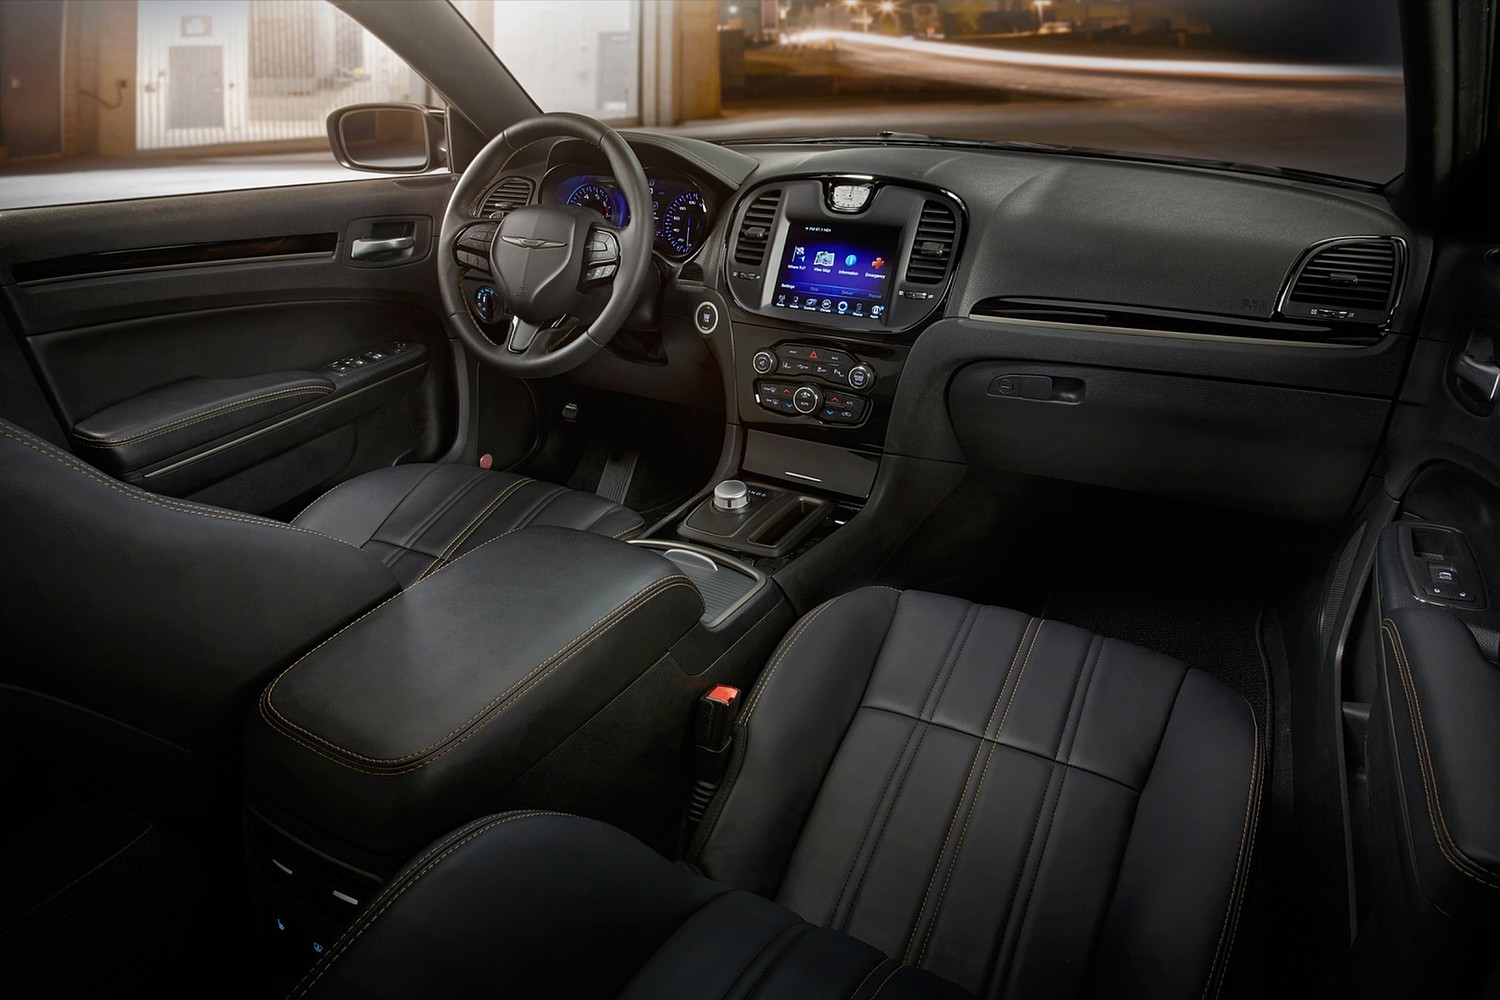 Chrysler 300 Alloy Sedan Interior. Options Shown. (2016 model year shown)